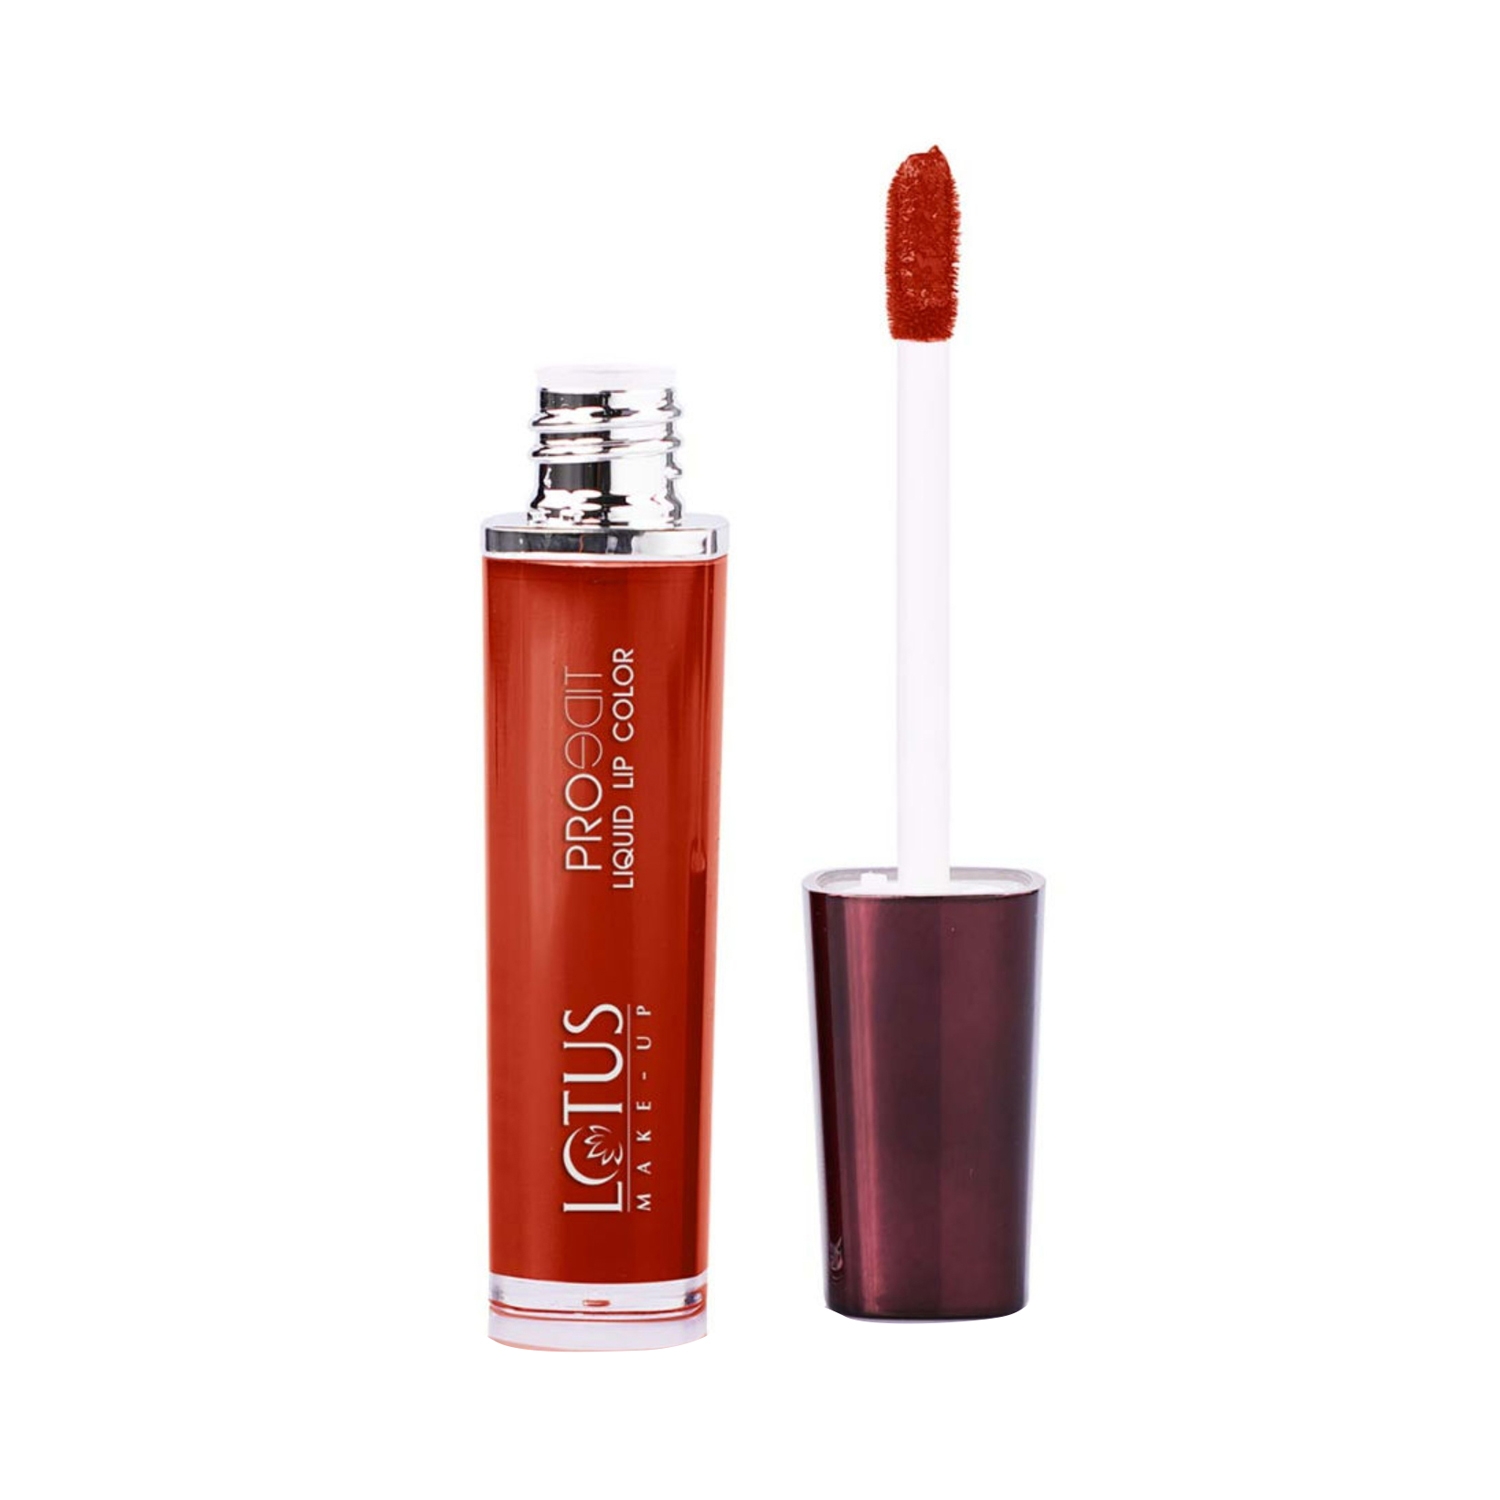 Lotus | Lotus Makeup Proedit Liquid Matte Lip Color - PLC03 On Fire (8g)